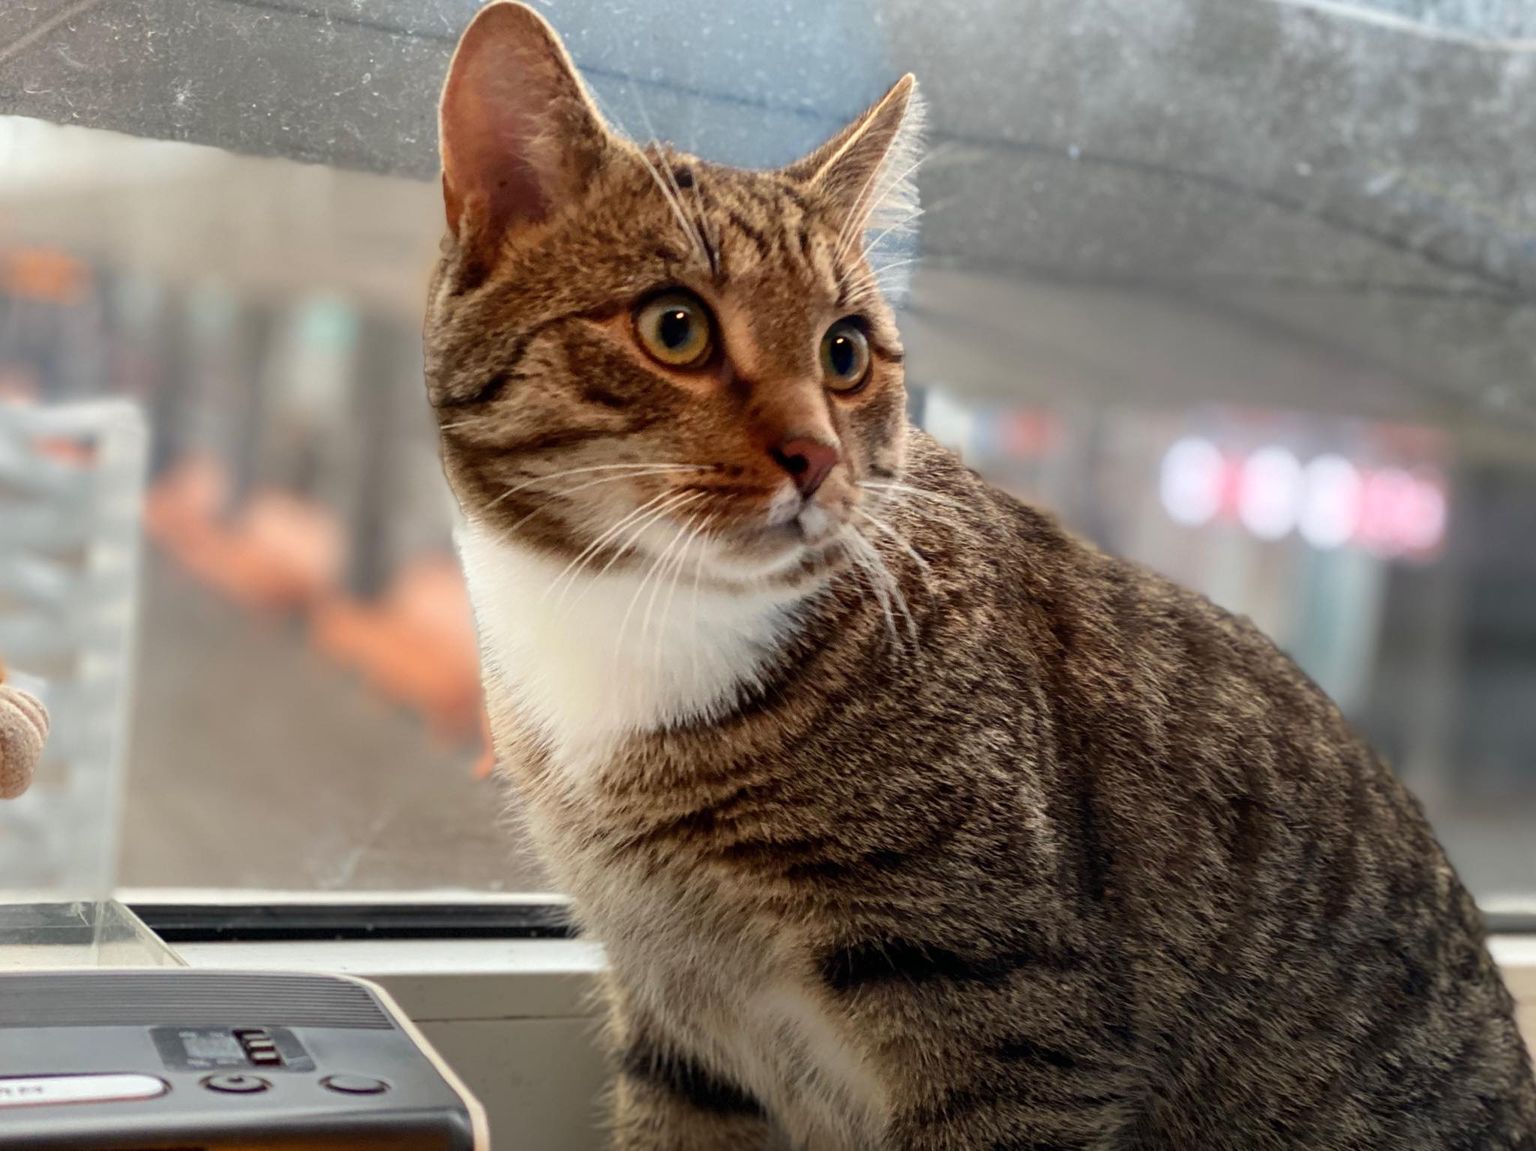 Оставленный на Таллиннском автовокзале кот. Ему нашли новый дом и назвали Муракасом.